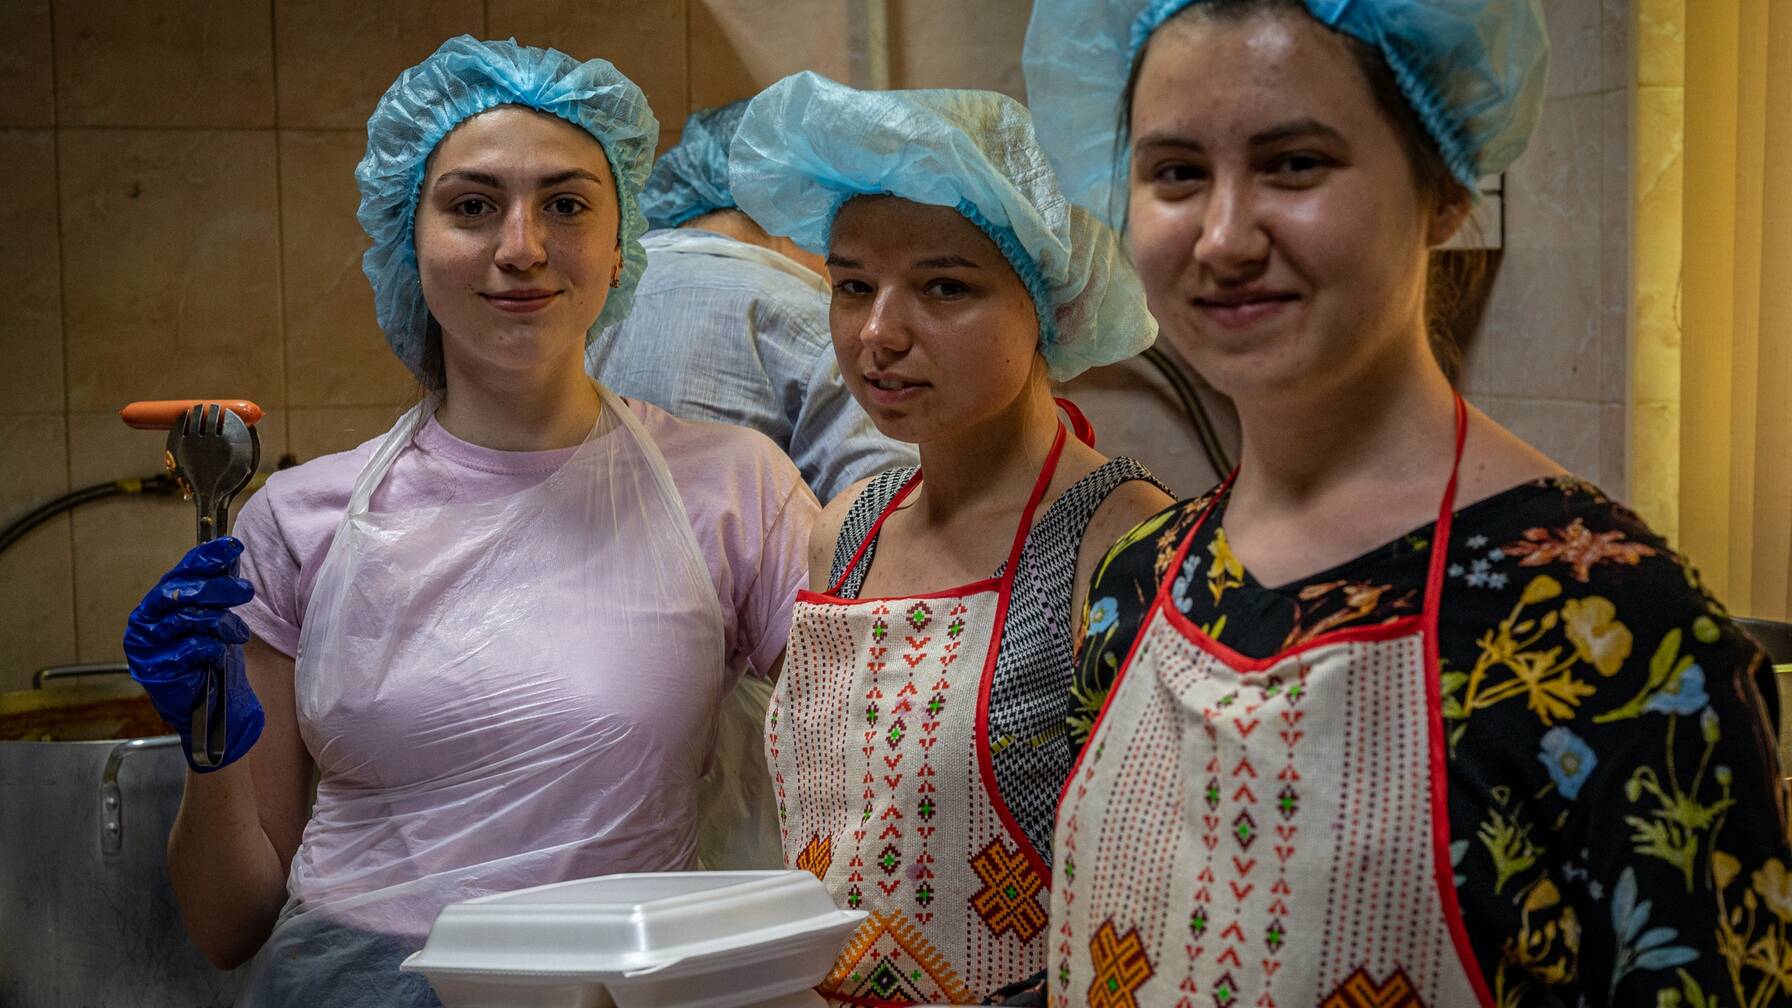 Migliaia di volontari, molti dei quali sono rifugiati a loro volta, danno ogni giorno un valido supporto a Caritas in Ucraina e nei Paesi confinanti, ad esempio distribuendo pasti caldi alle persone.